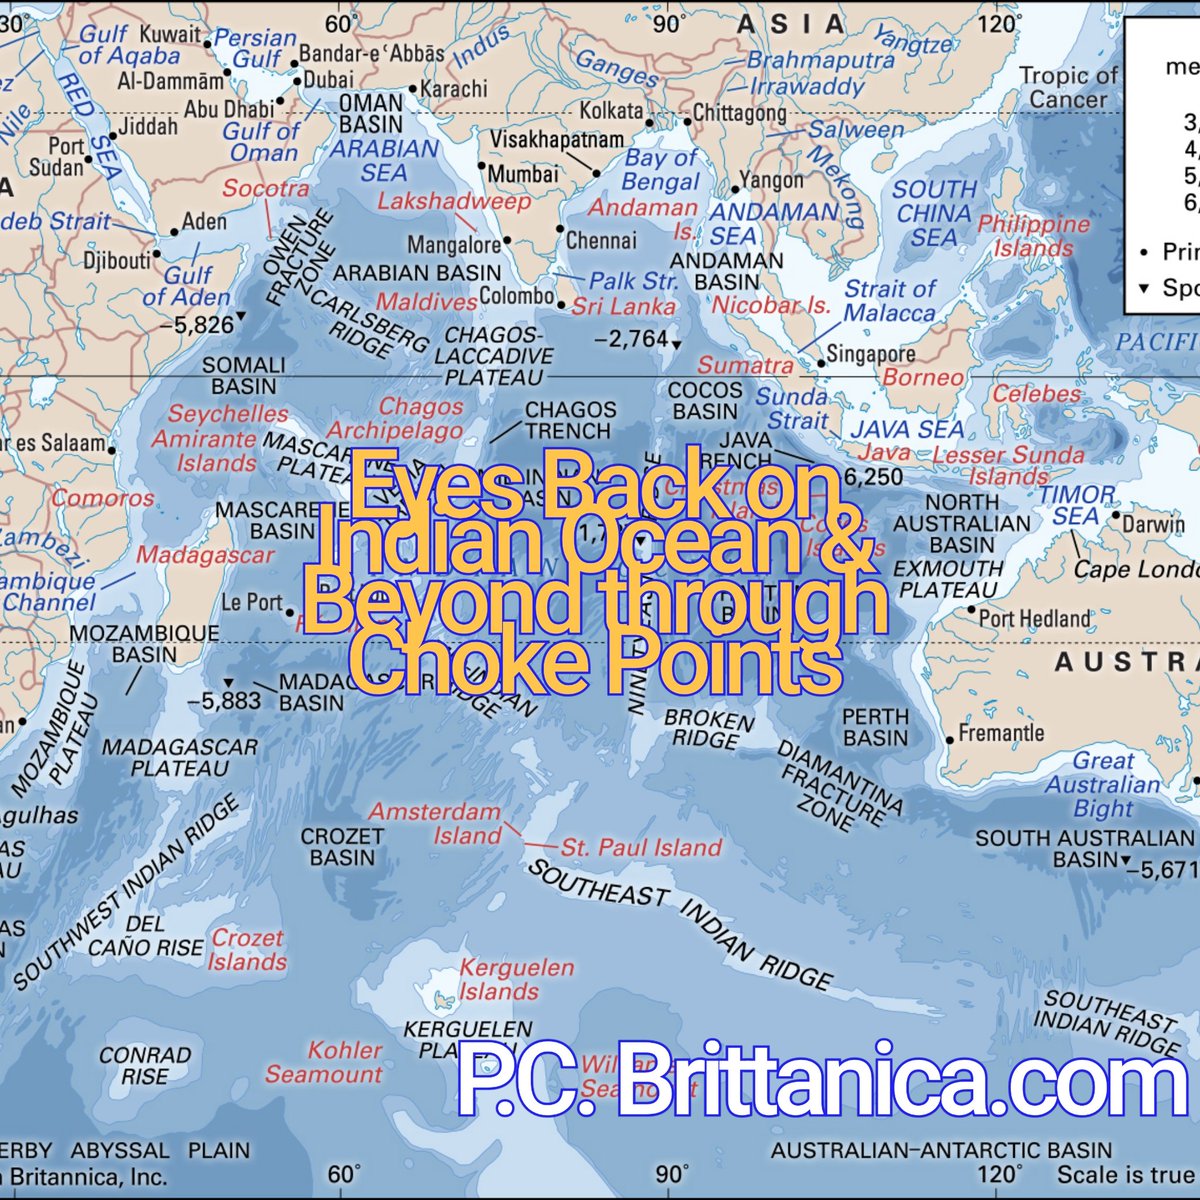 Название рек индийского океана. Индийский океан на карте. Моря индийского океана. Физическая карта индийского океана.